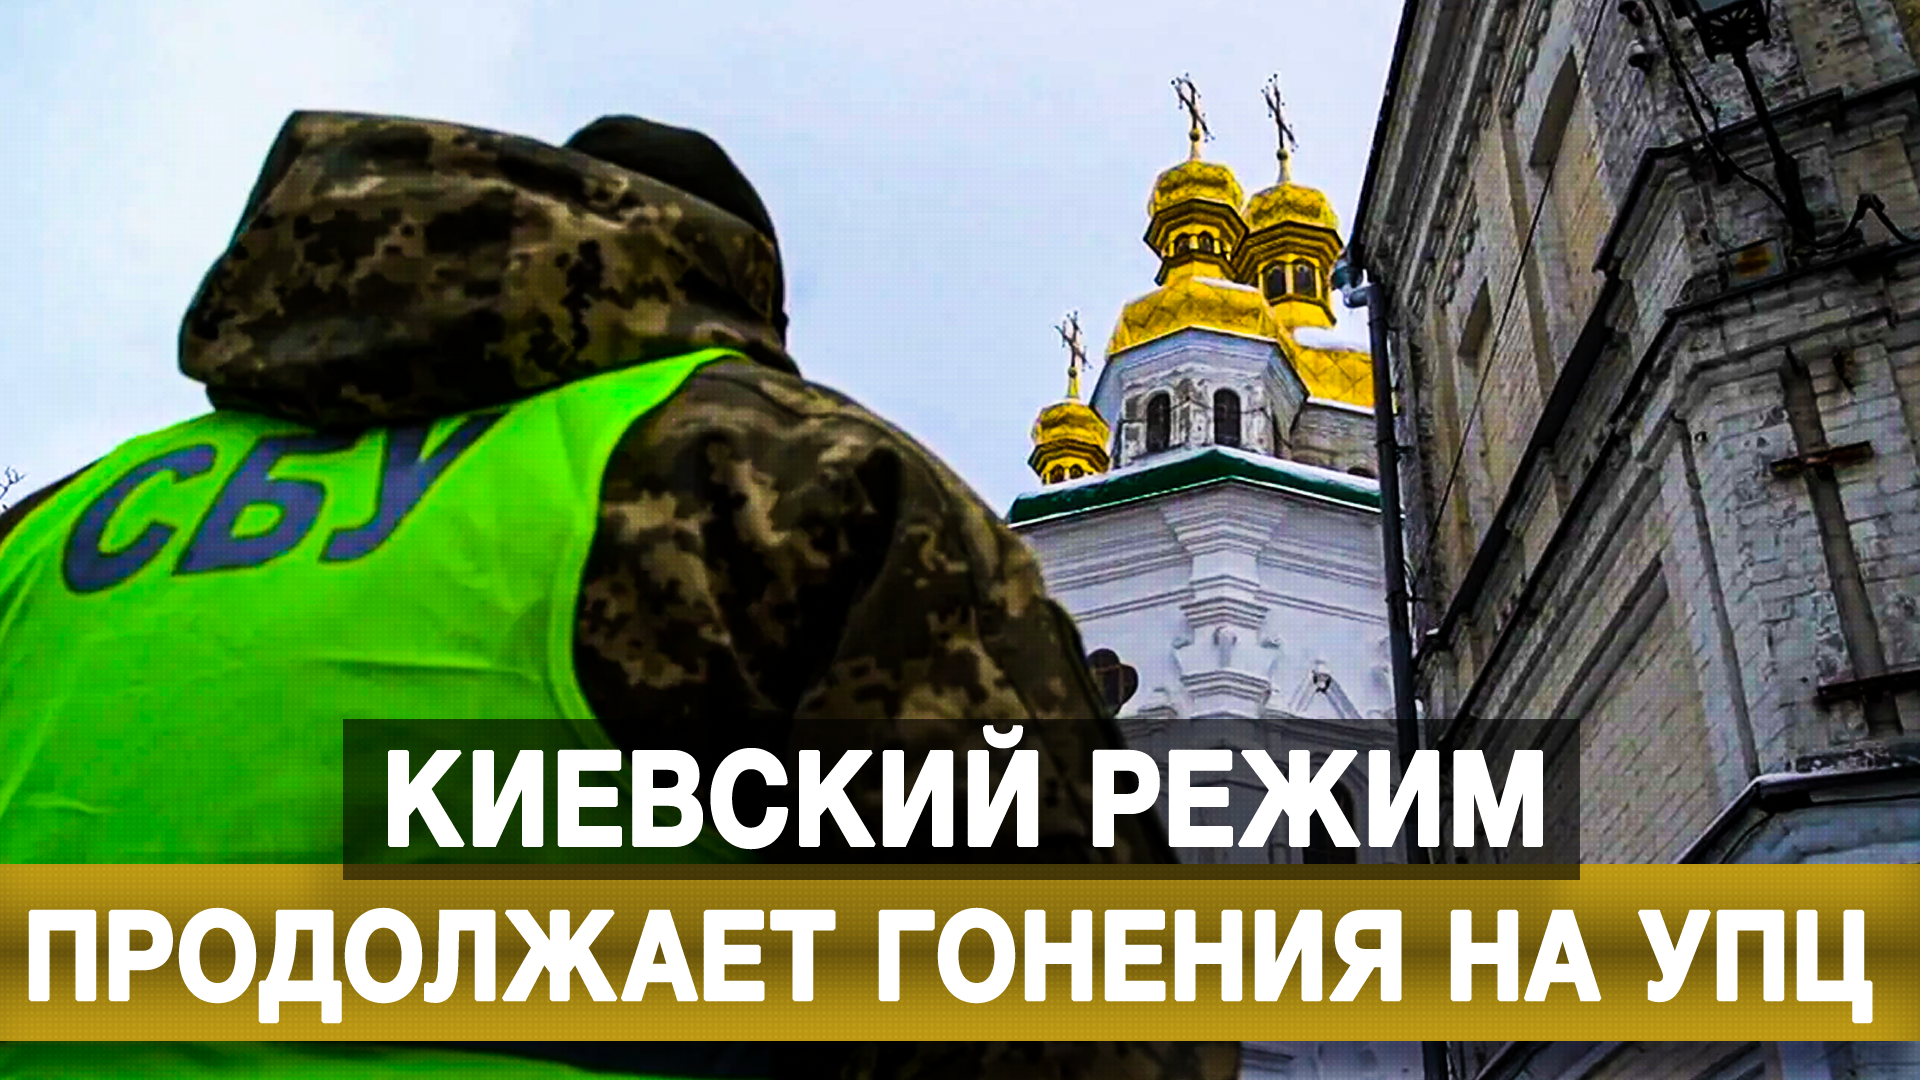 Киевский режим продолжает гонения на УПЦ